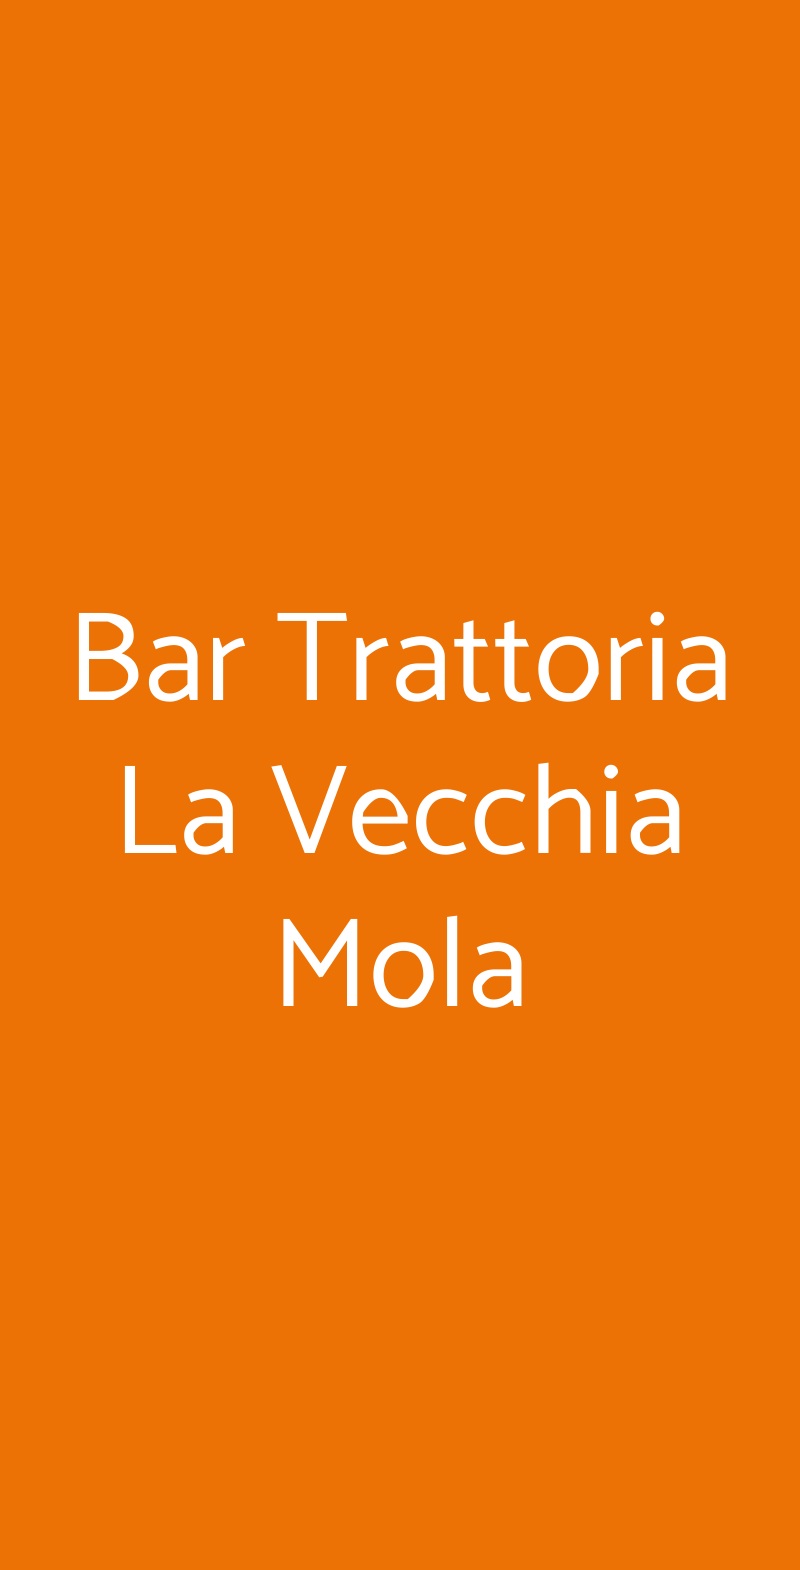 Bar Trattoria La Vecchia Mola Ponzano Romano menù 1 pagina